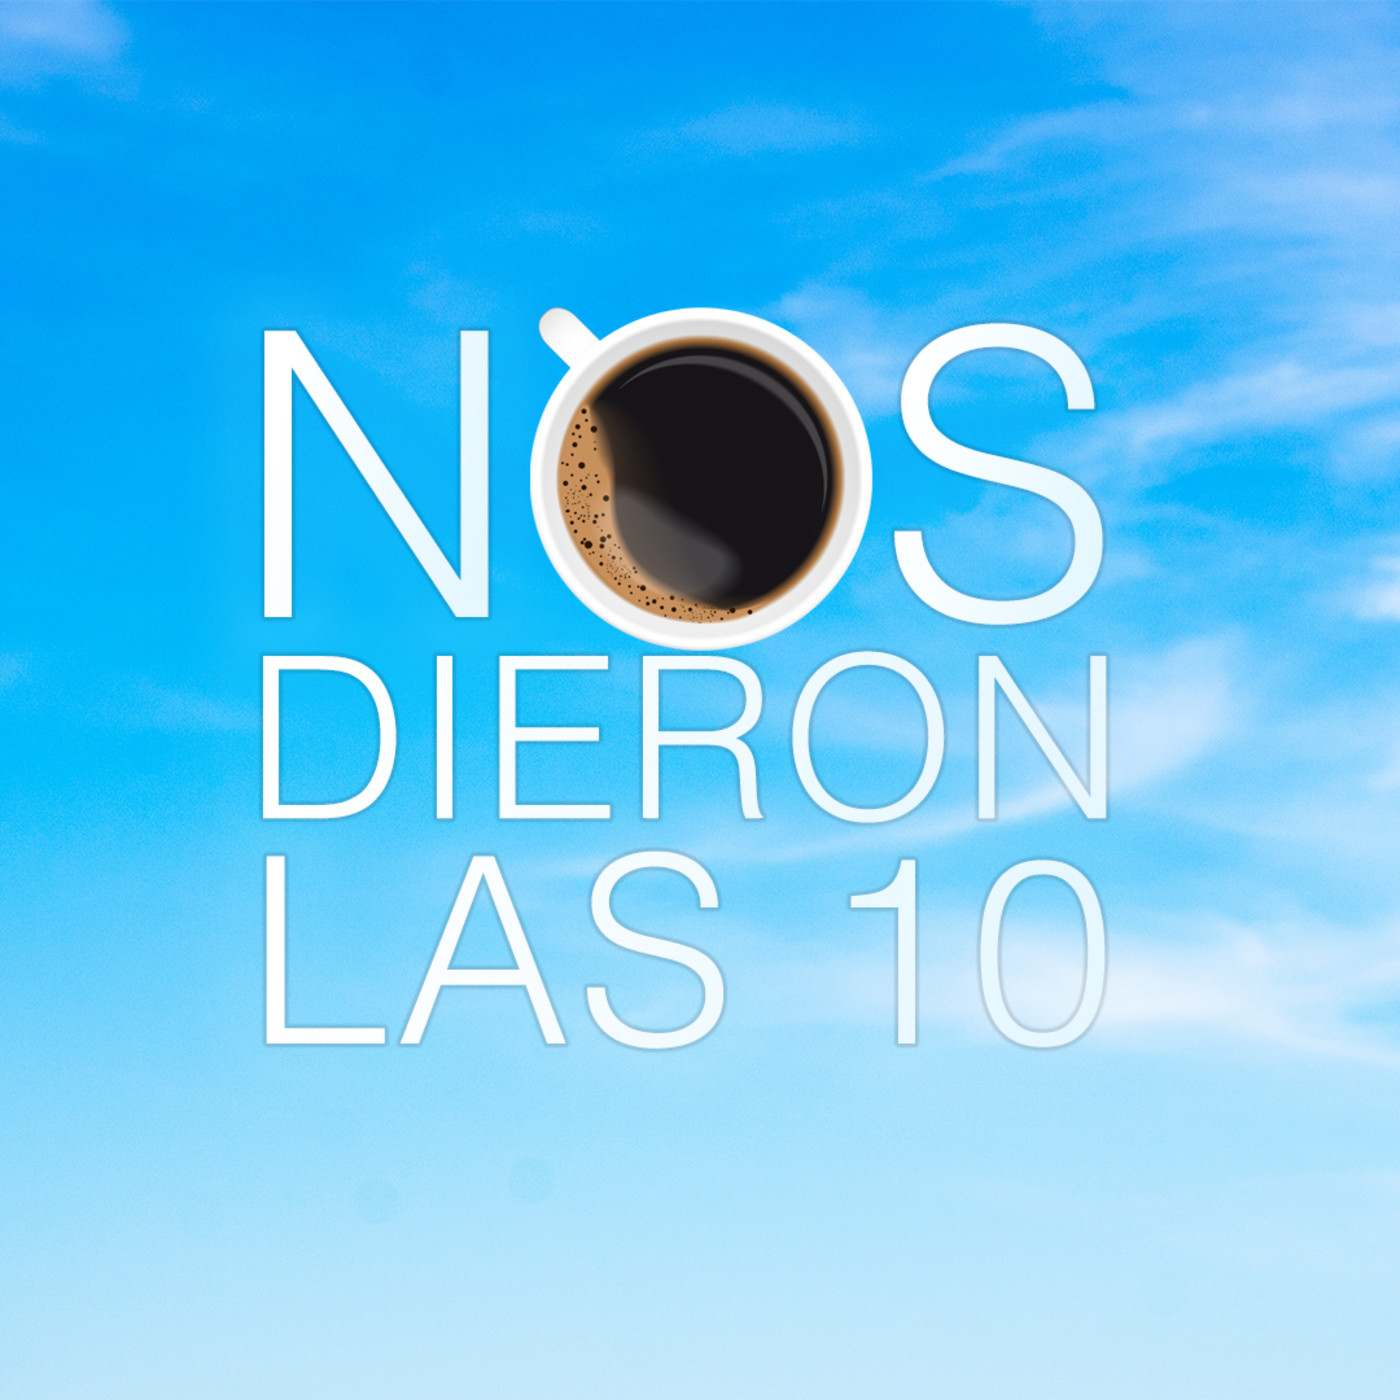 NOS DIERON LAS 10